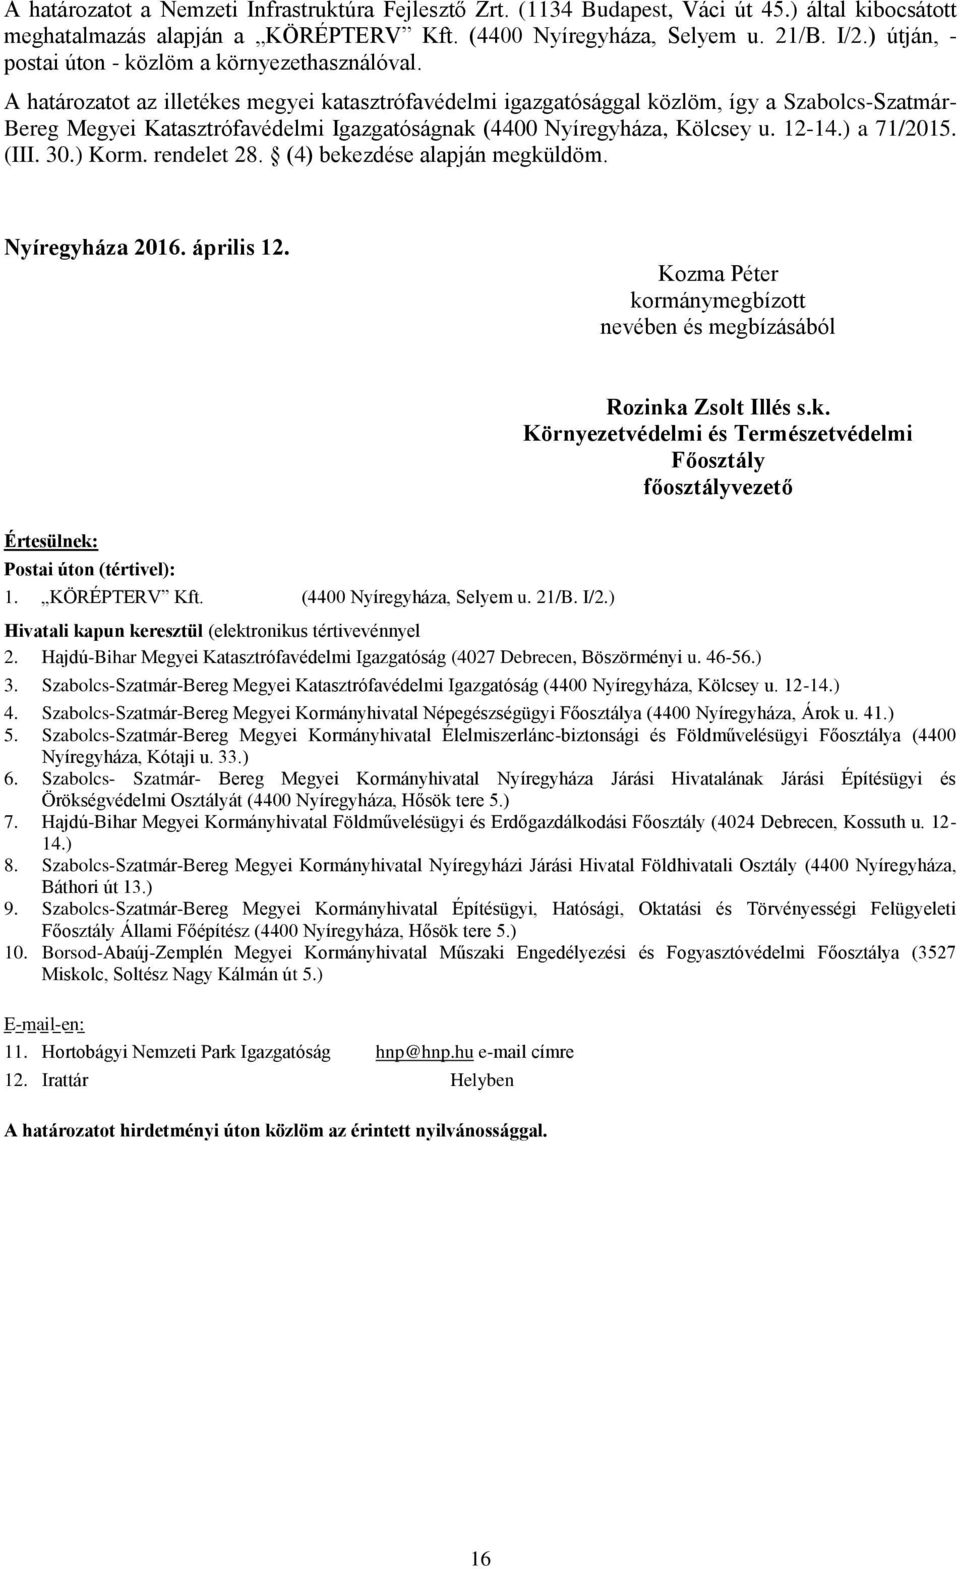 A határozatot az illetékes megyei katasztrófavédelmi igazgatósággal közlöm, így a Szabolcs-Szatmár- Bereg Megyei Katasztrófavédelmi Igazgatóságnak (4400 Nyíregyháza, Kölcsey u. 12-14.) a 71/2015.